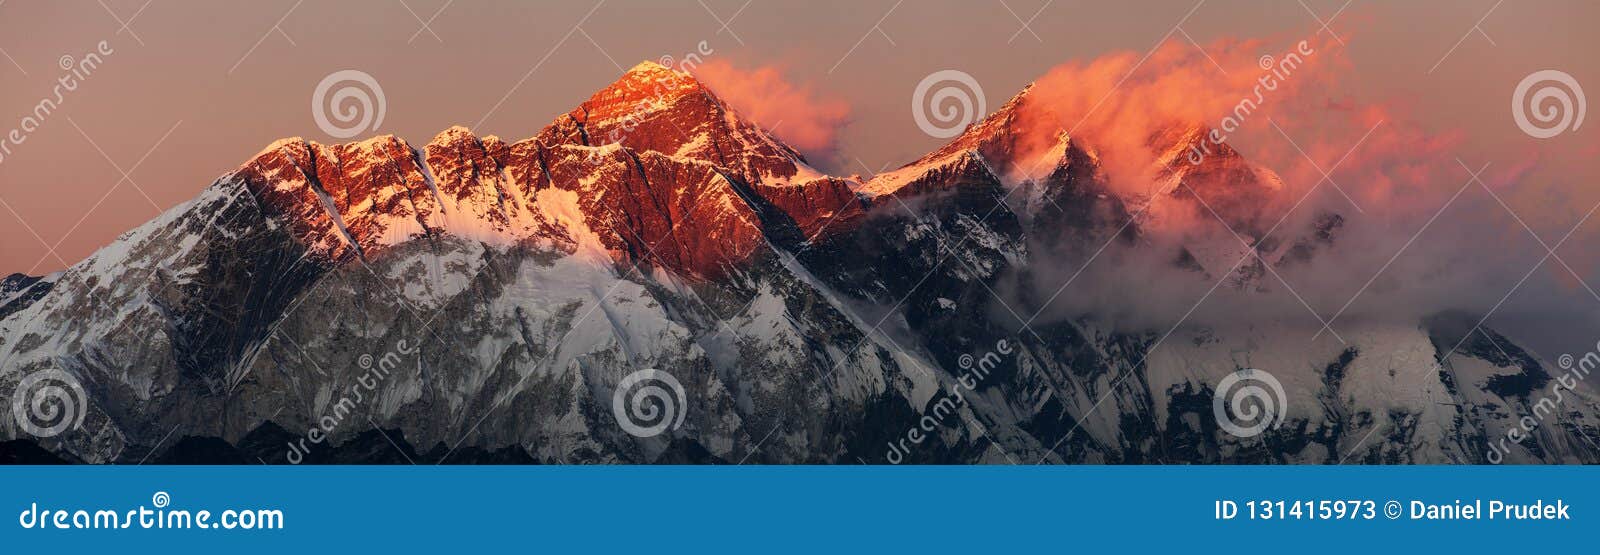 Igualación de la opinión coloreada roja de la puesta del sol de la cara del sur del monte Everest Lhotse y de la roca de Nuptse con las nubes hermosas del pueblo de Kongde, valle de Khumbu, Solukhumbu, montañas de Himalaya de Nepal